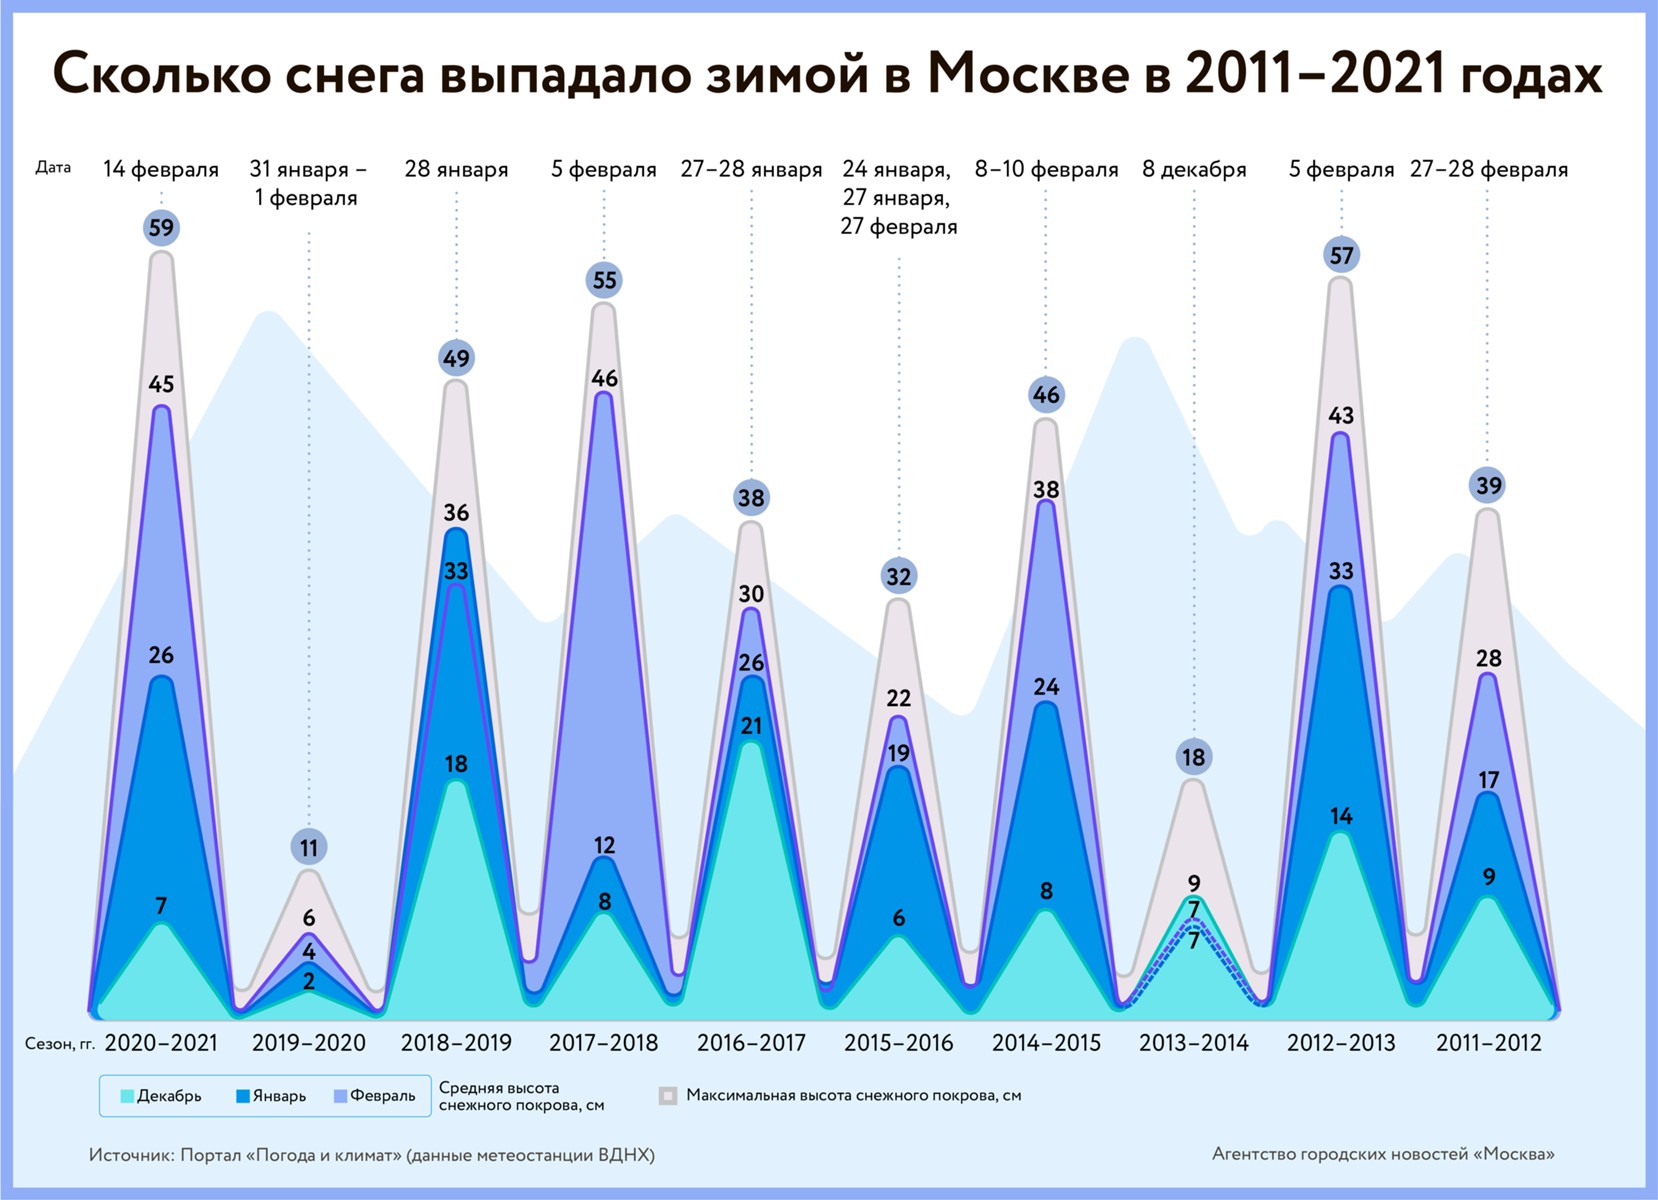 5 декабря 2020 год. Количество выпавшего снега в Москве по годам. Статистика выпадения снега. Уровень снега по годам 2022 Москва. Уровень снега в Москве за 2021.